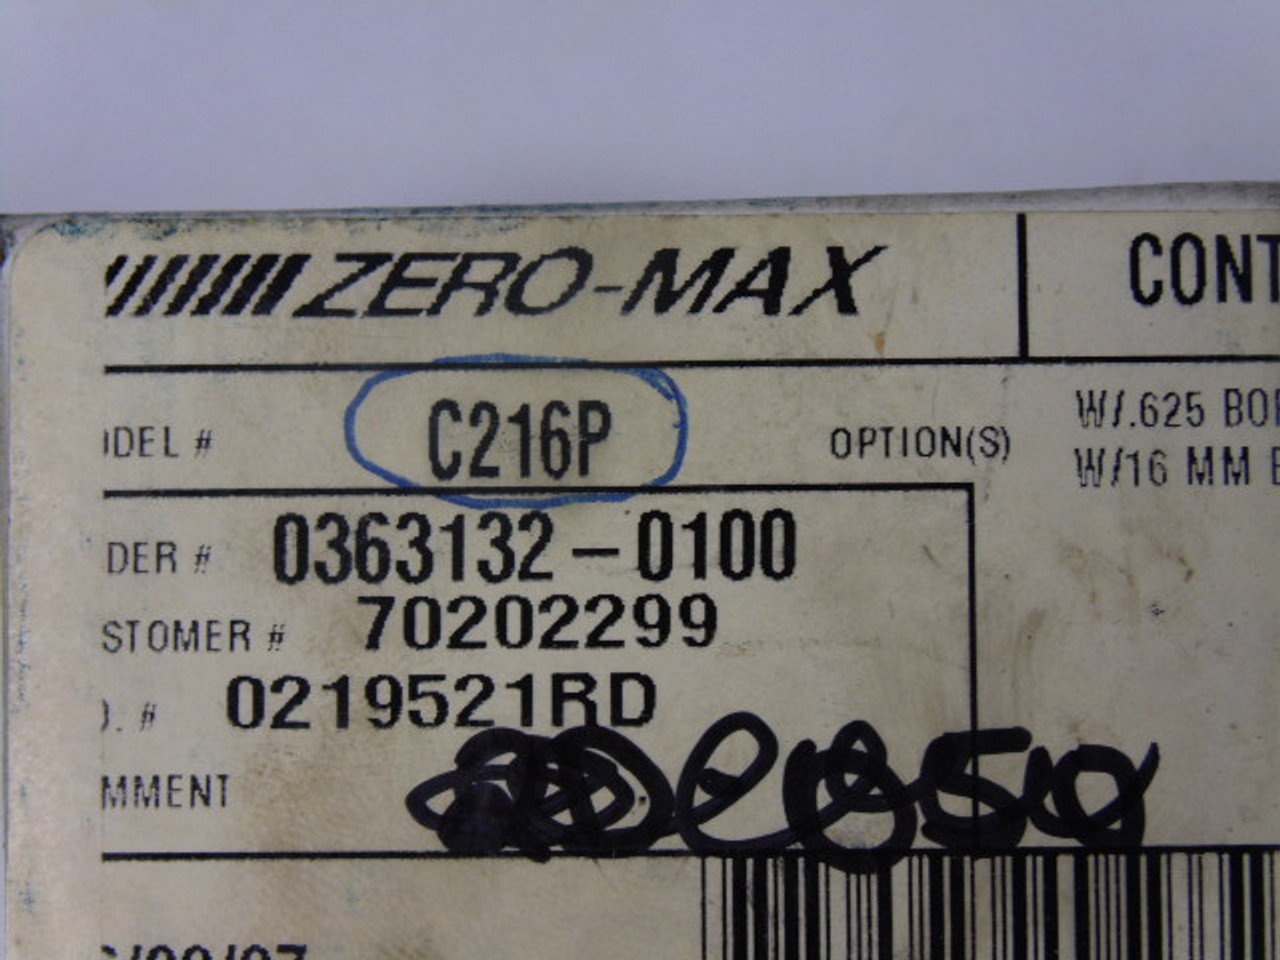 Zeromax C216P Control Flex Coupling 14mm Bore ! NEW !